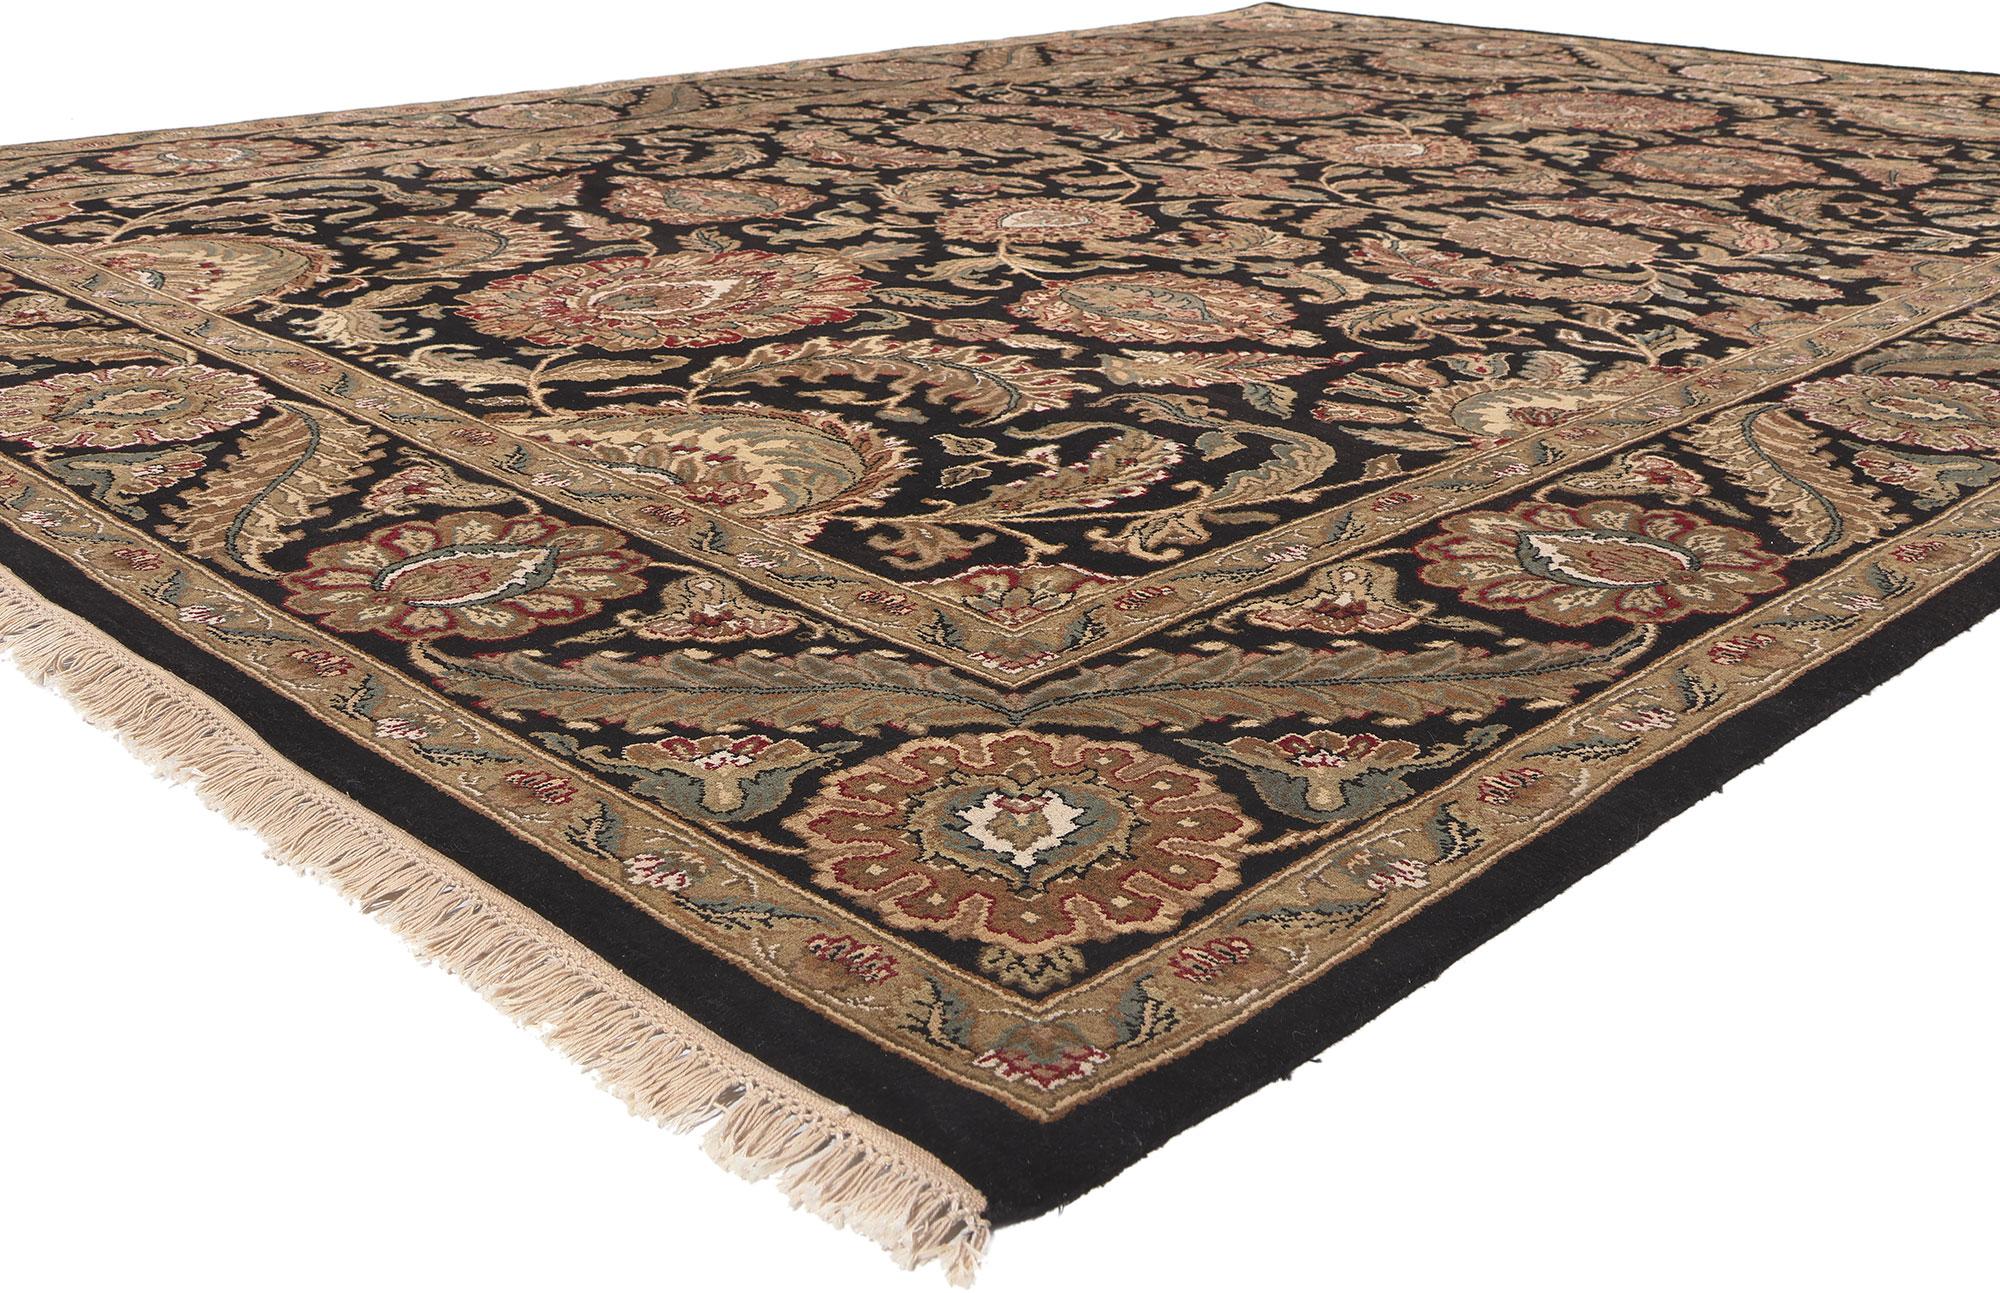 78678 Erdfarbener Vintage-Indienteppich, 09'01 x 12'02. Indische Teppiche mit Shah-Abbasi-Motiven sind handgeknüpfte Teppiche mit komplizierten floralen Motiven, die von der persischen Shah-Abbasi-Periode inspiriert sind und typischerweise in